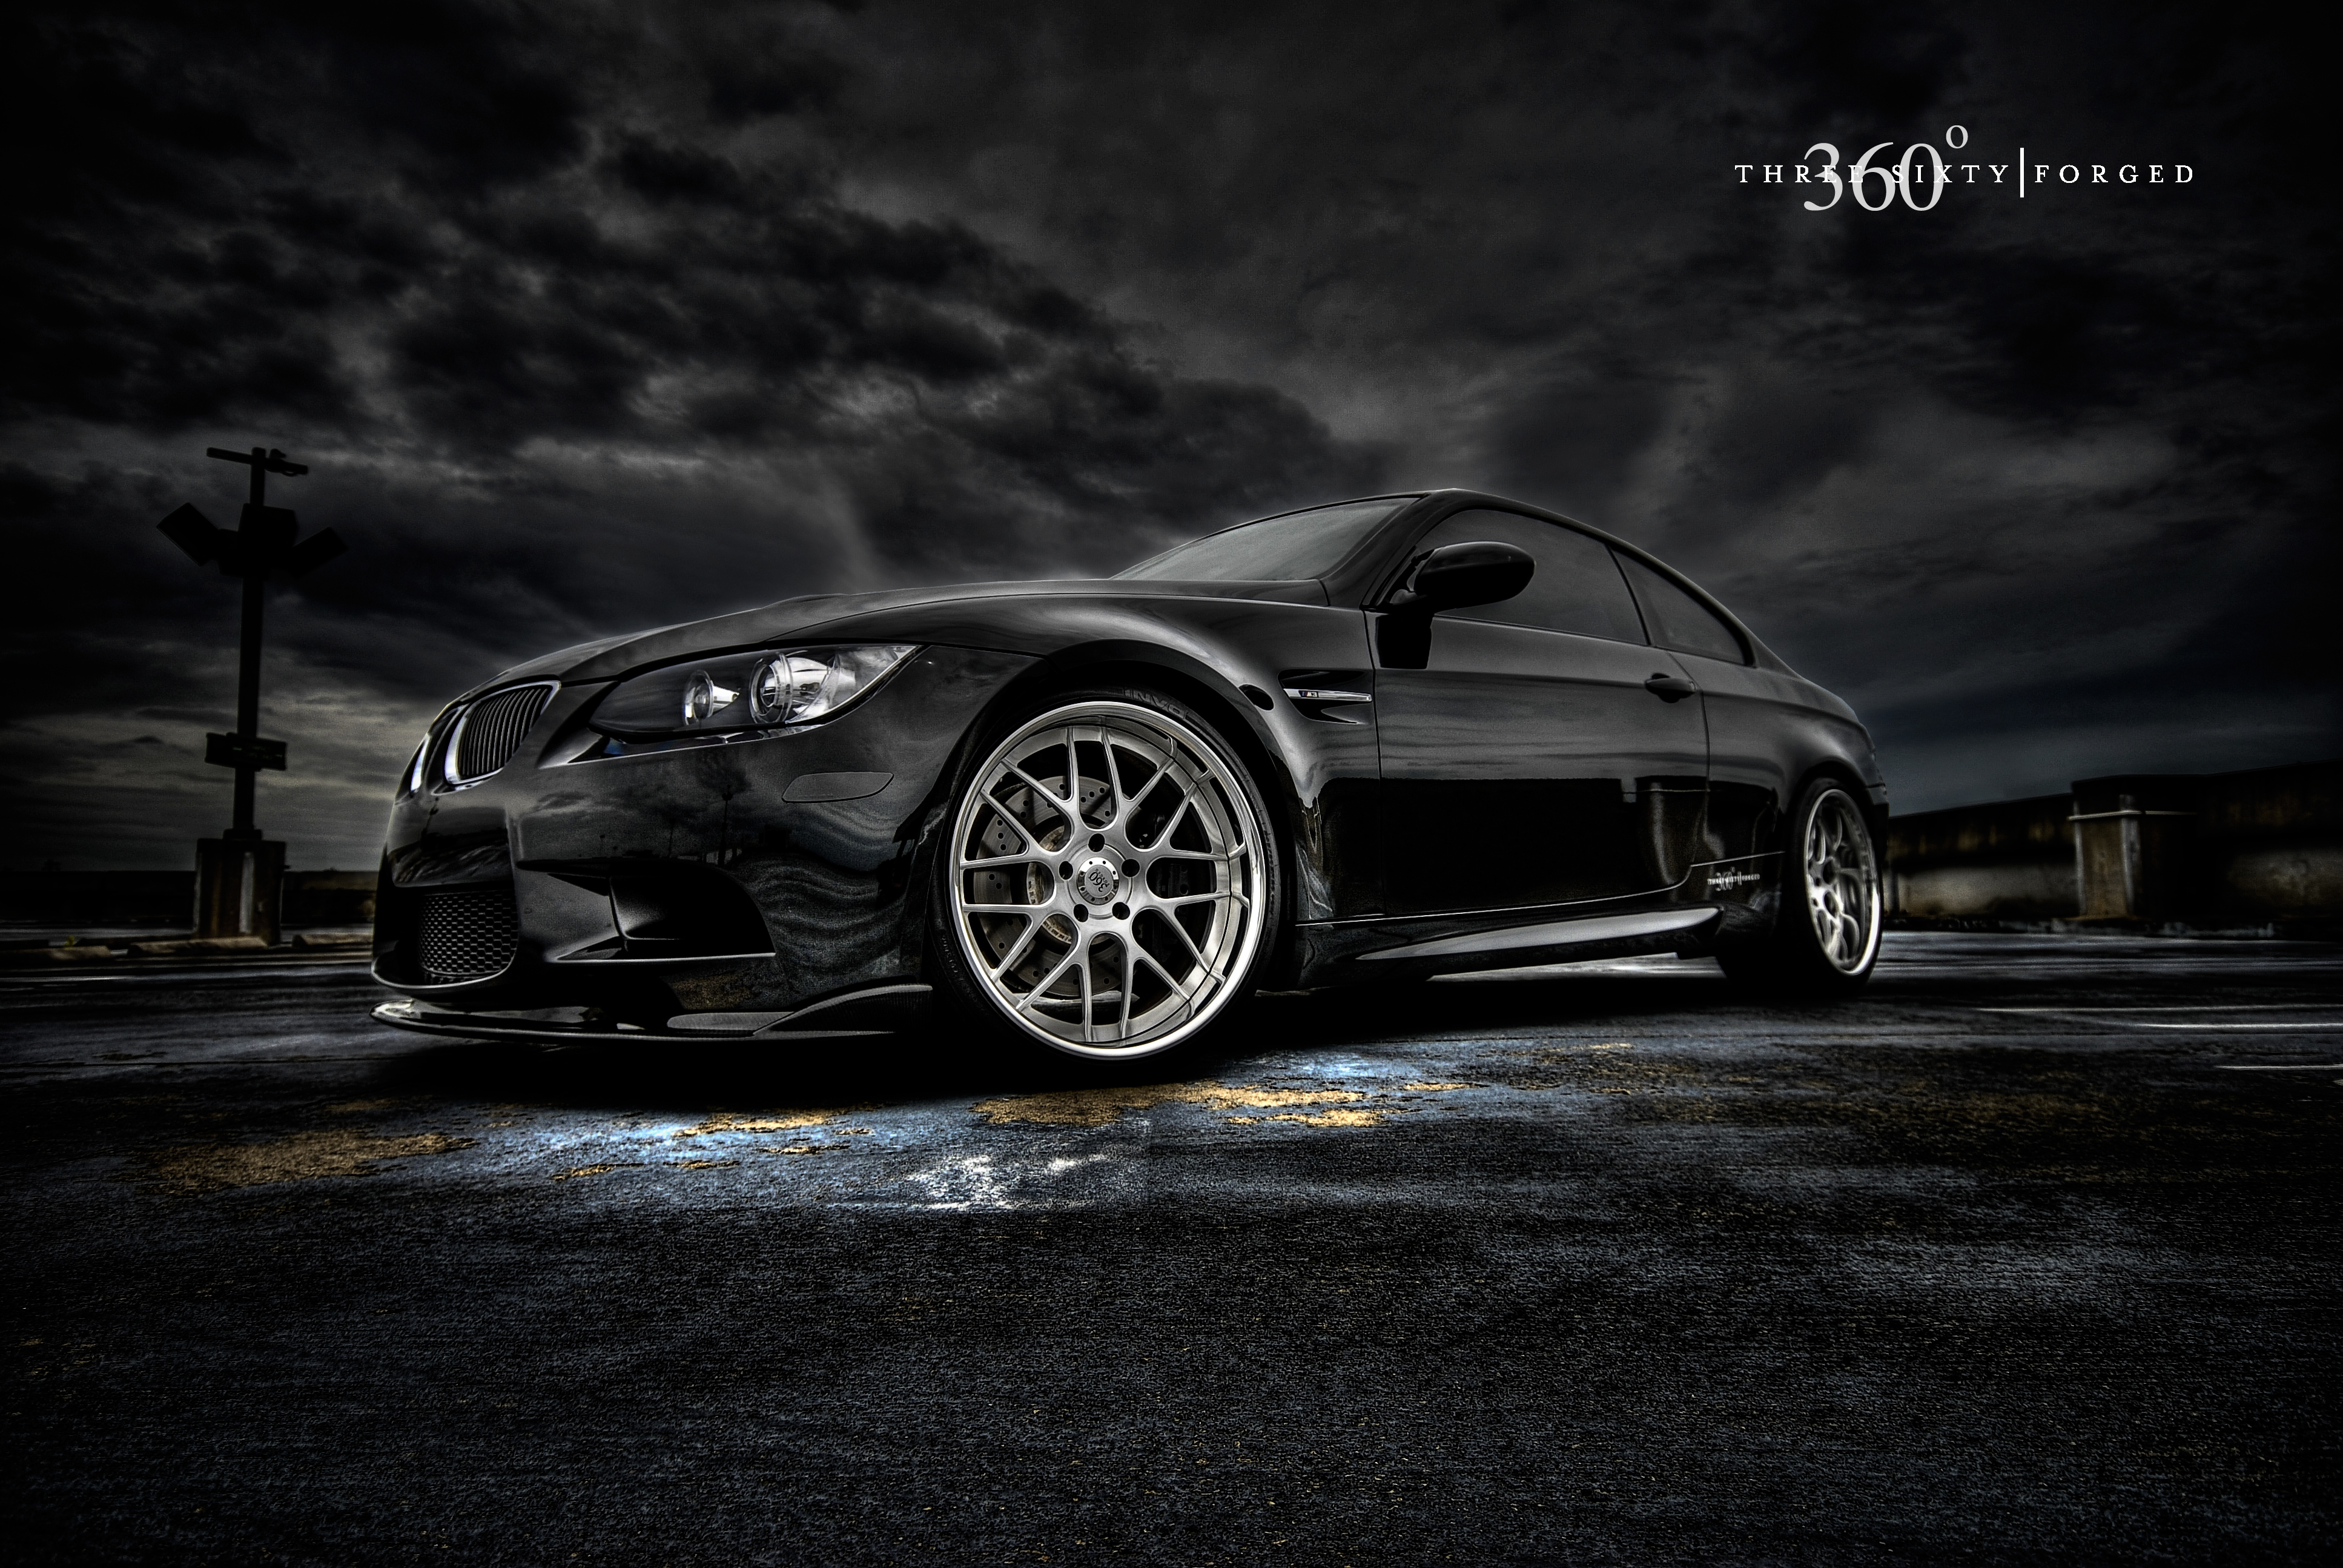 360 Forgé BMW M3 HDR / Flickr - Partage de photos!